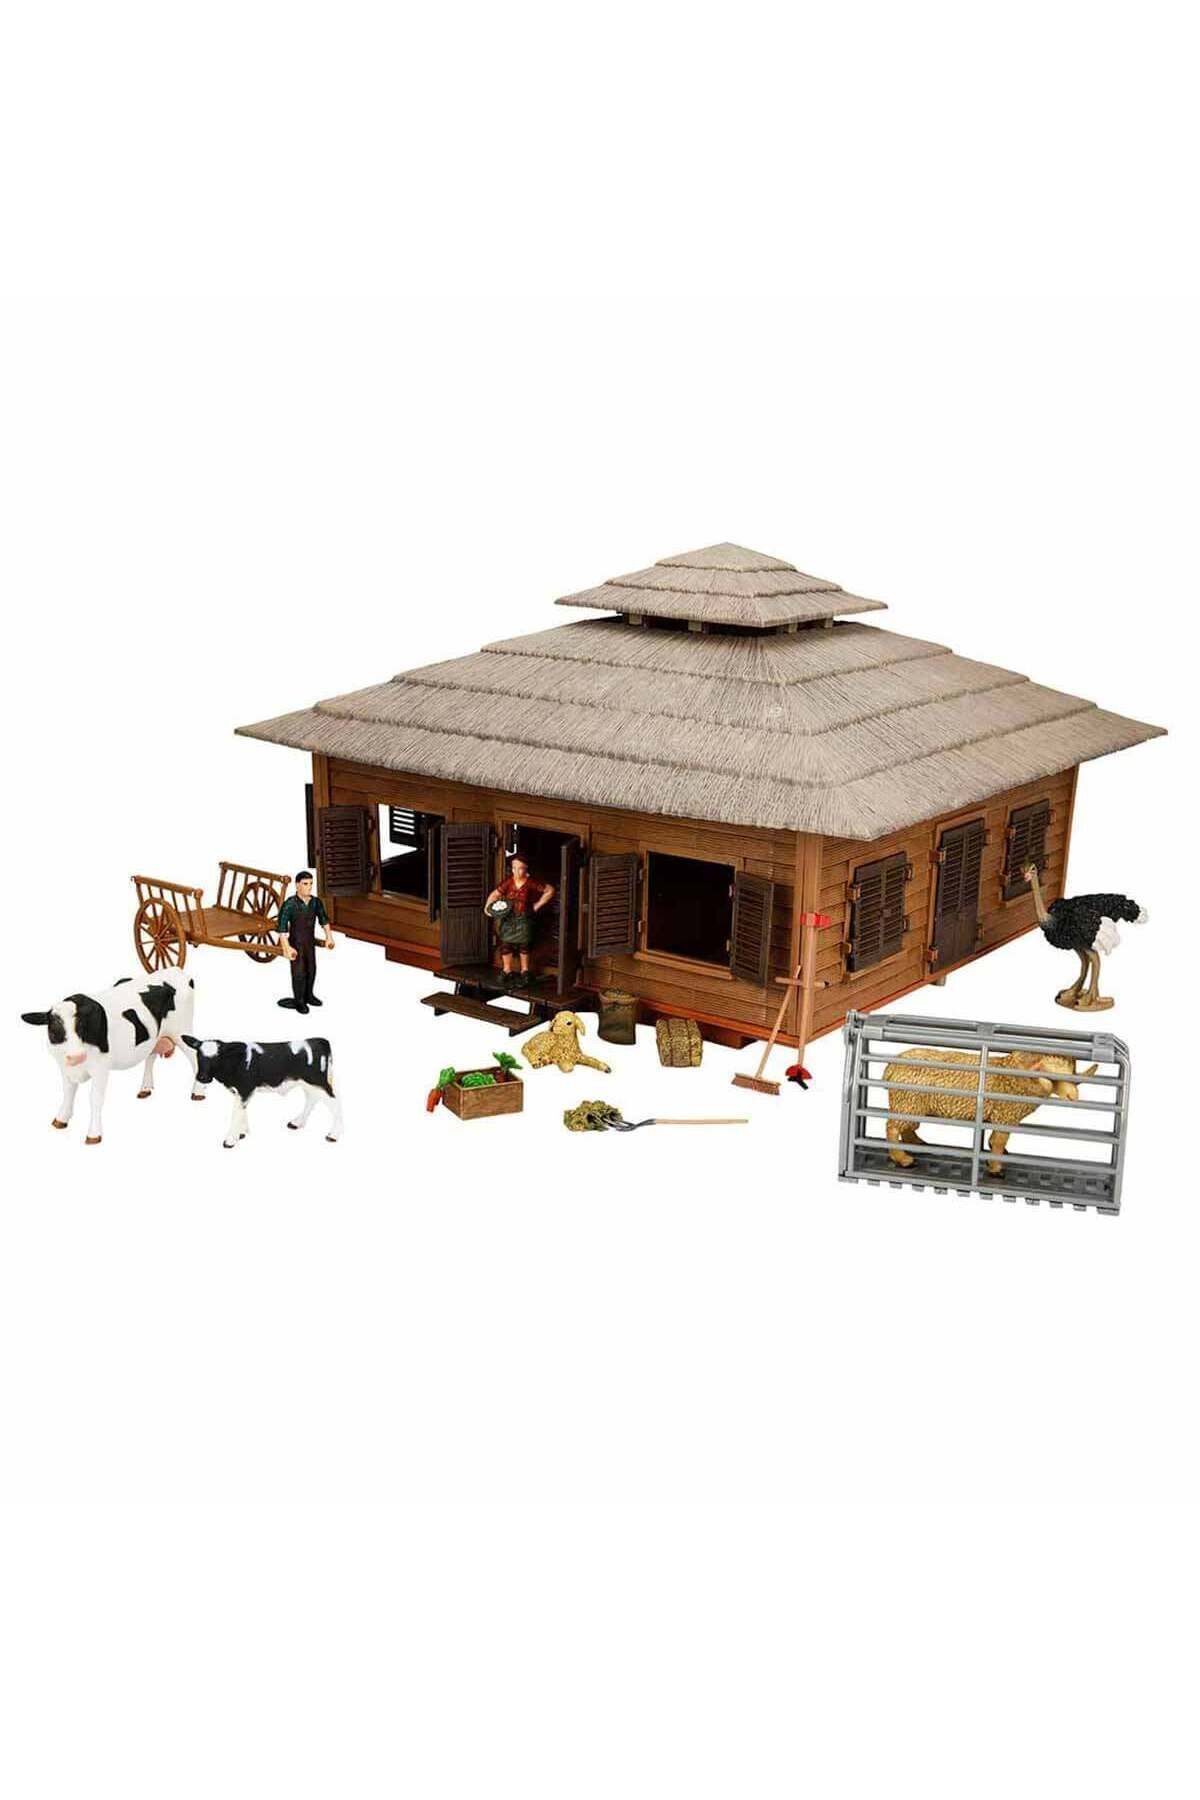 Cici Oyuncak Farm Animal Playground Series Dev Çiftlik Oyun Seti Aksesuarlı ( Koç )